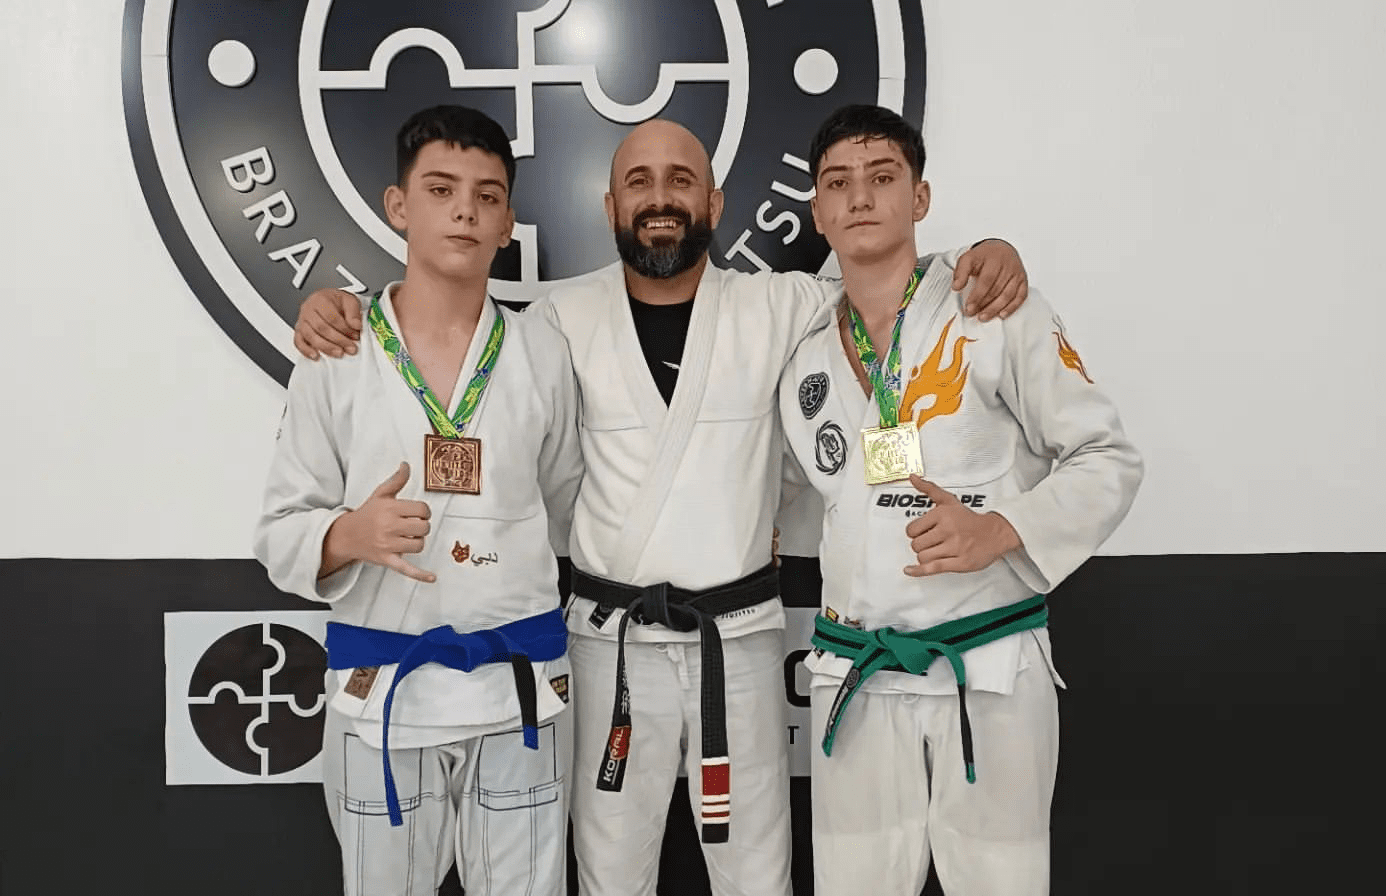 Jovens atletas de Gravataí buscam mais títulos mundiais no jiu-jítsu